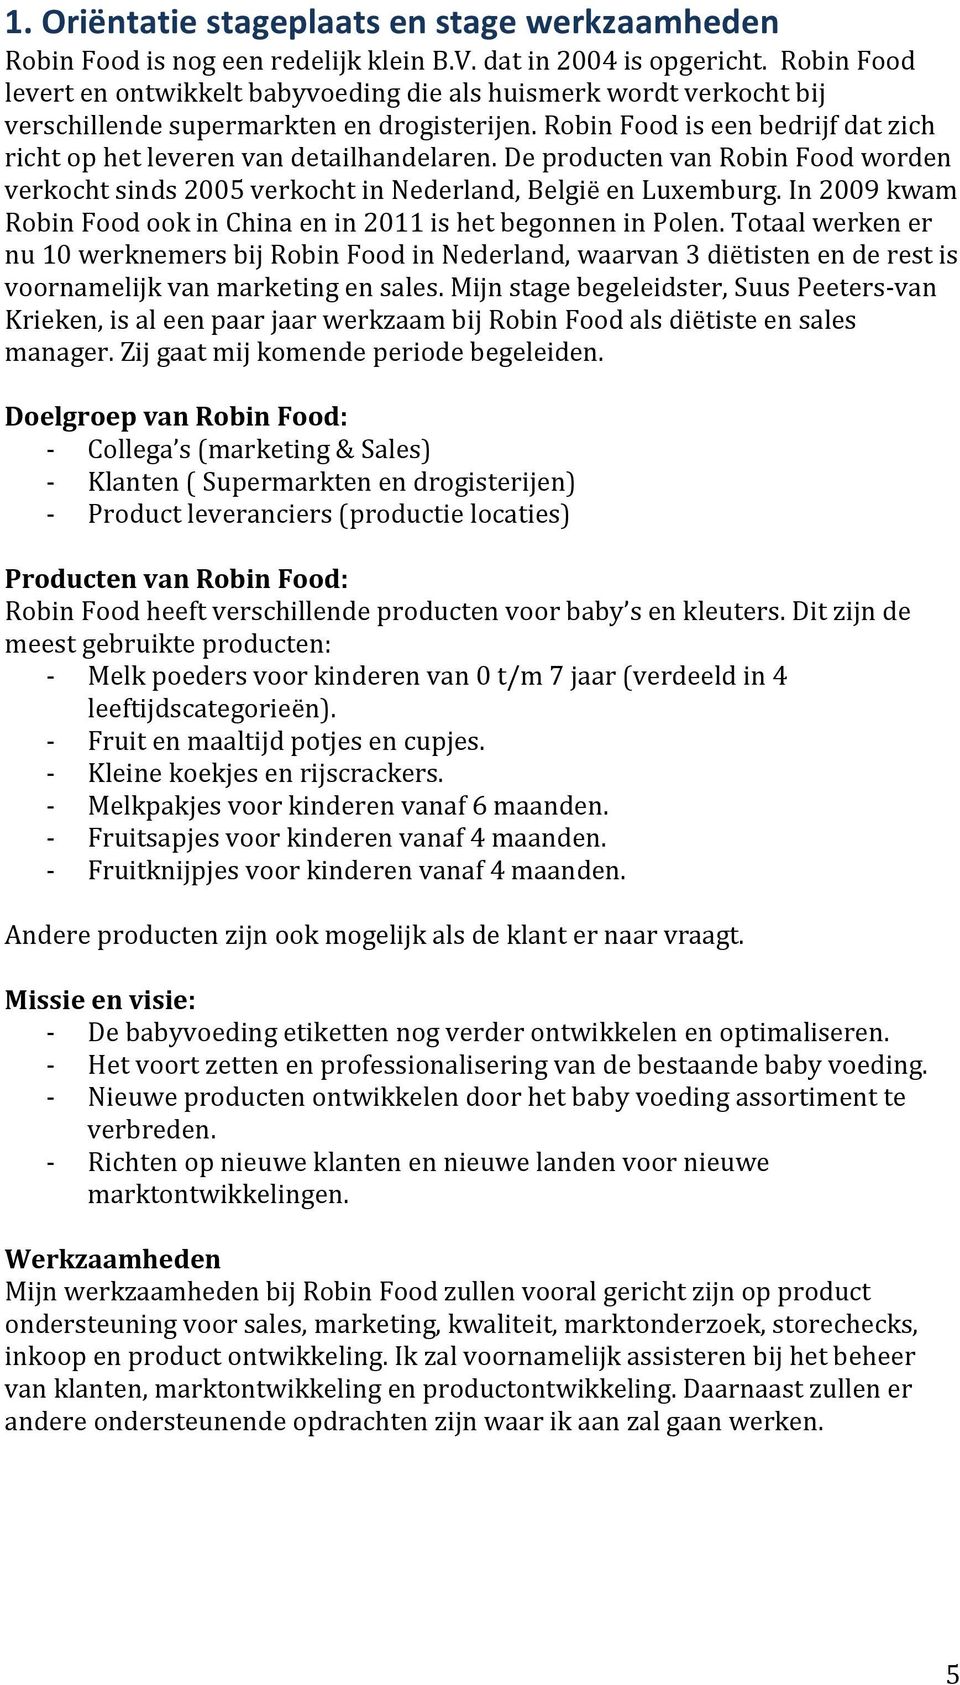 Robin Food is een bedrijf dat zich richt op het leveren van detailhandelaren. De producten van Robin Food worden verkocht sinds 2005 verkocht in Nederland, België en Luxemburg.